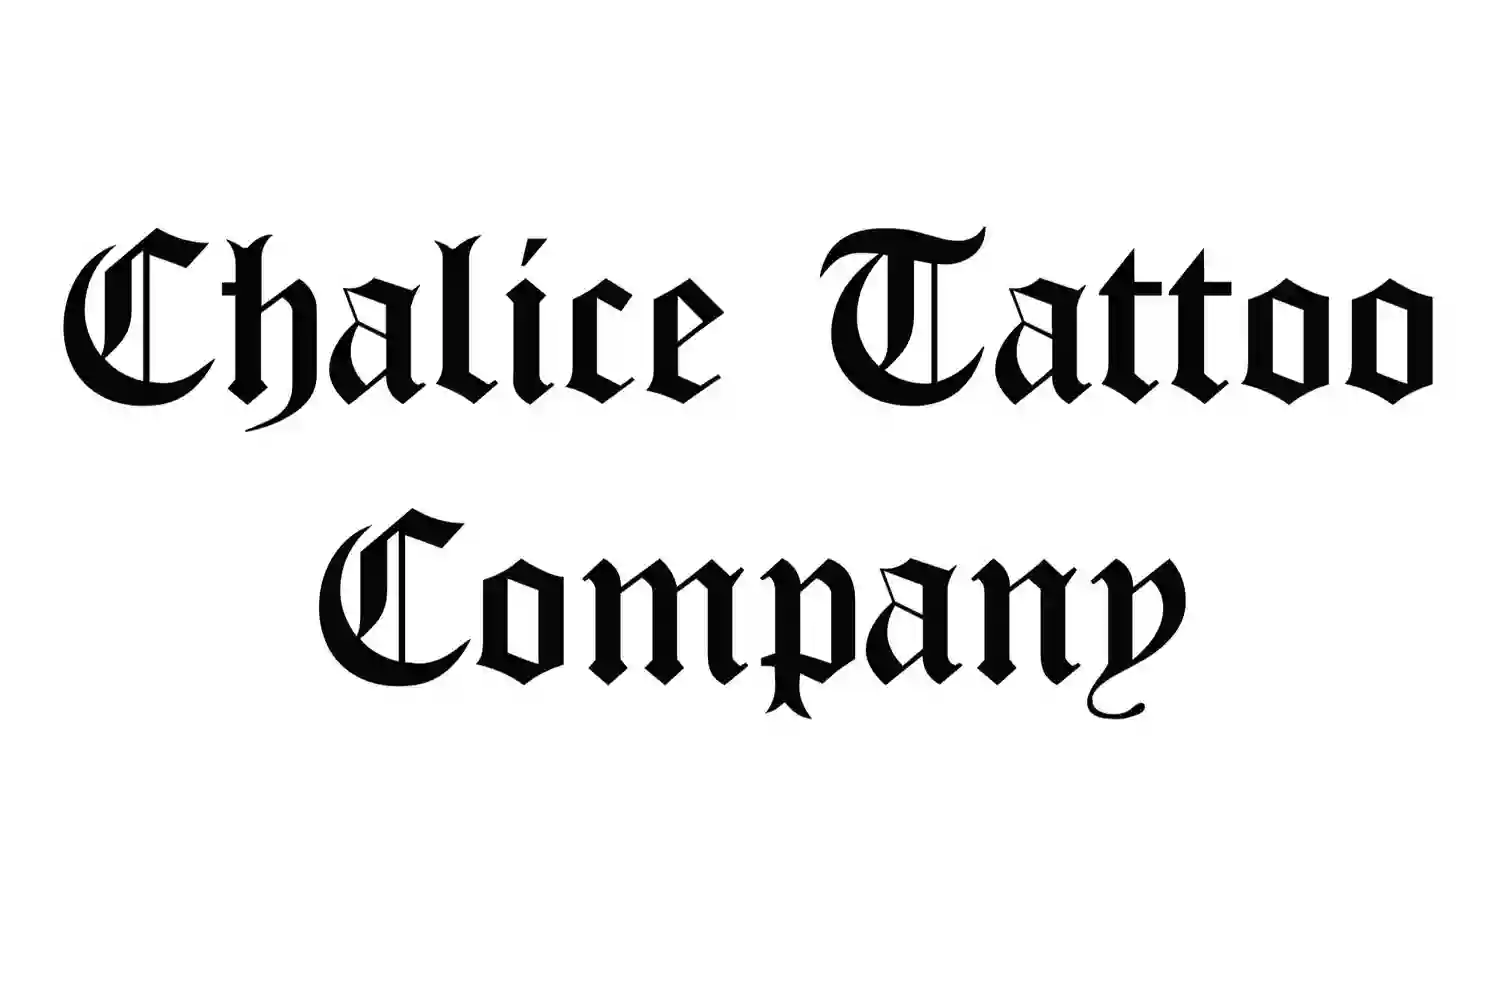 Chalice Tattoo Company